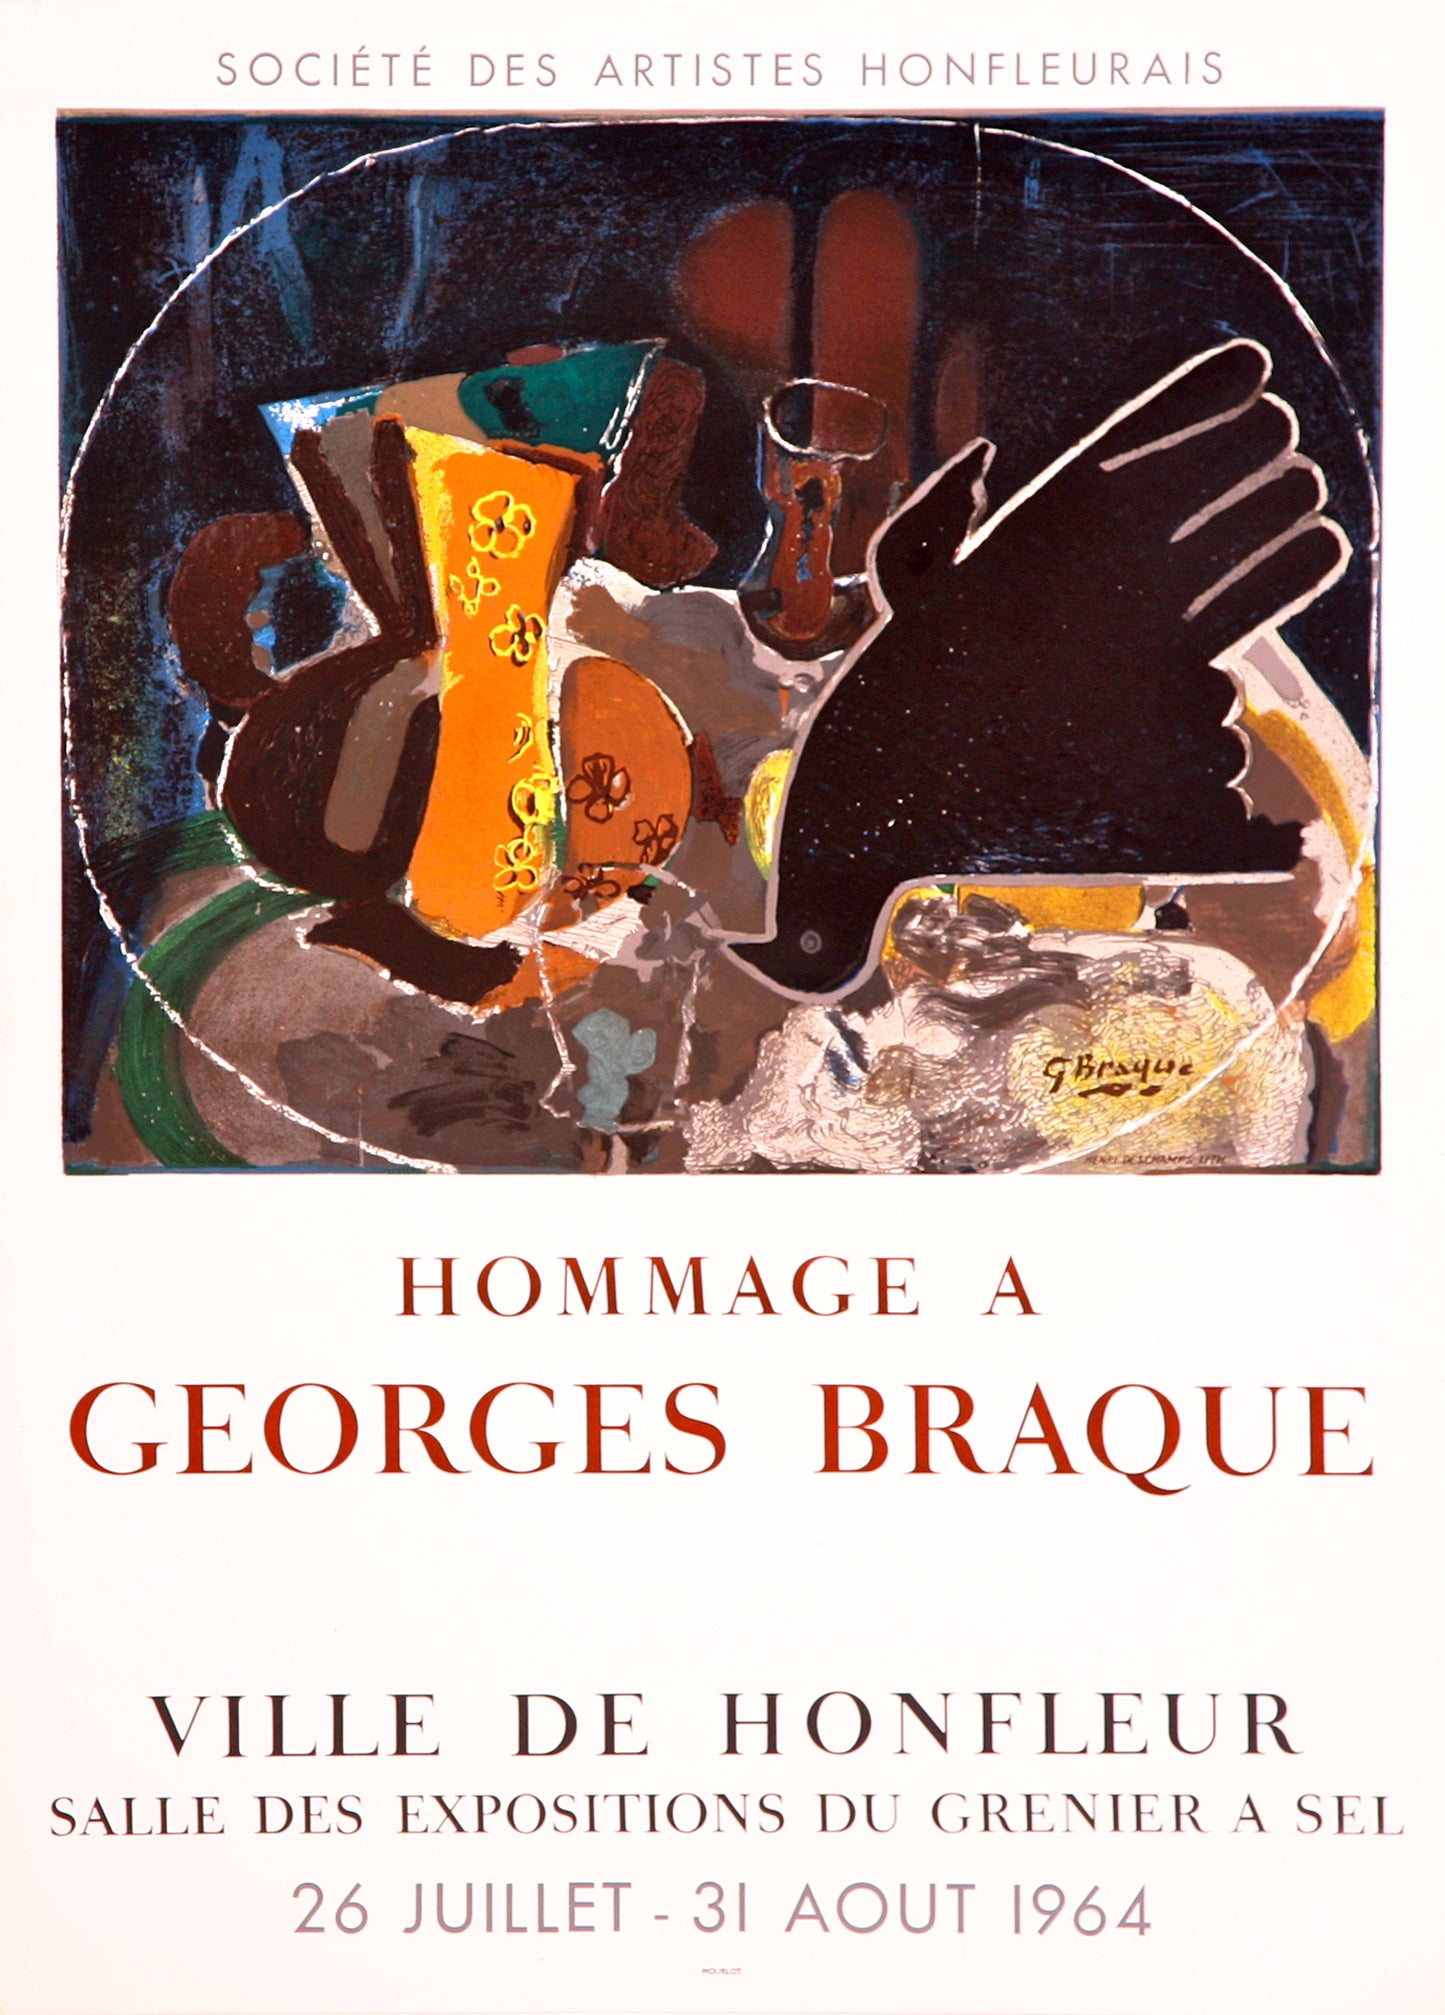 Pichet et Oiseau - Ville de Honfleur (after) Georges Braque, 1964 - Mourlot Editions - Fine_Art - Poster - Lithograph - Wall Art - Vintage - Prints - Original